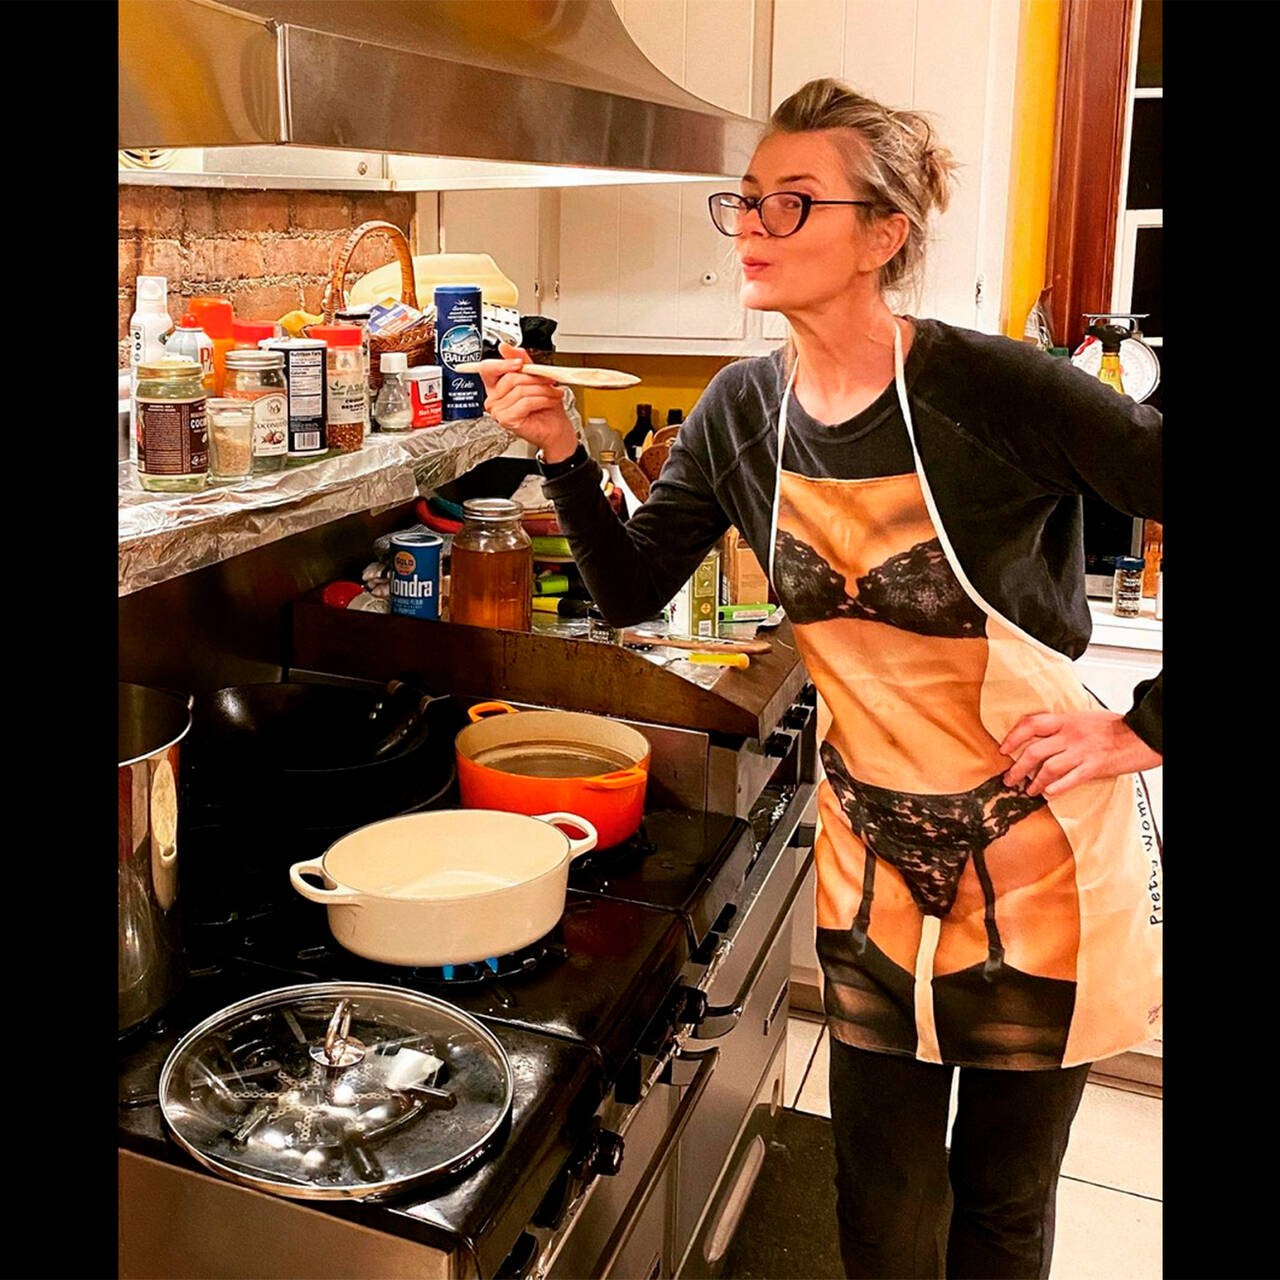 Красота женщины в трусиках на кухне приготовления пищи. сексуальная домохозяйка на кухне